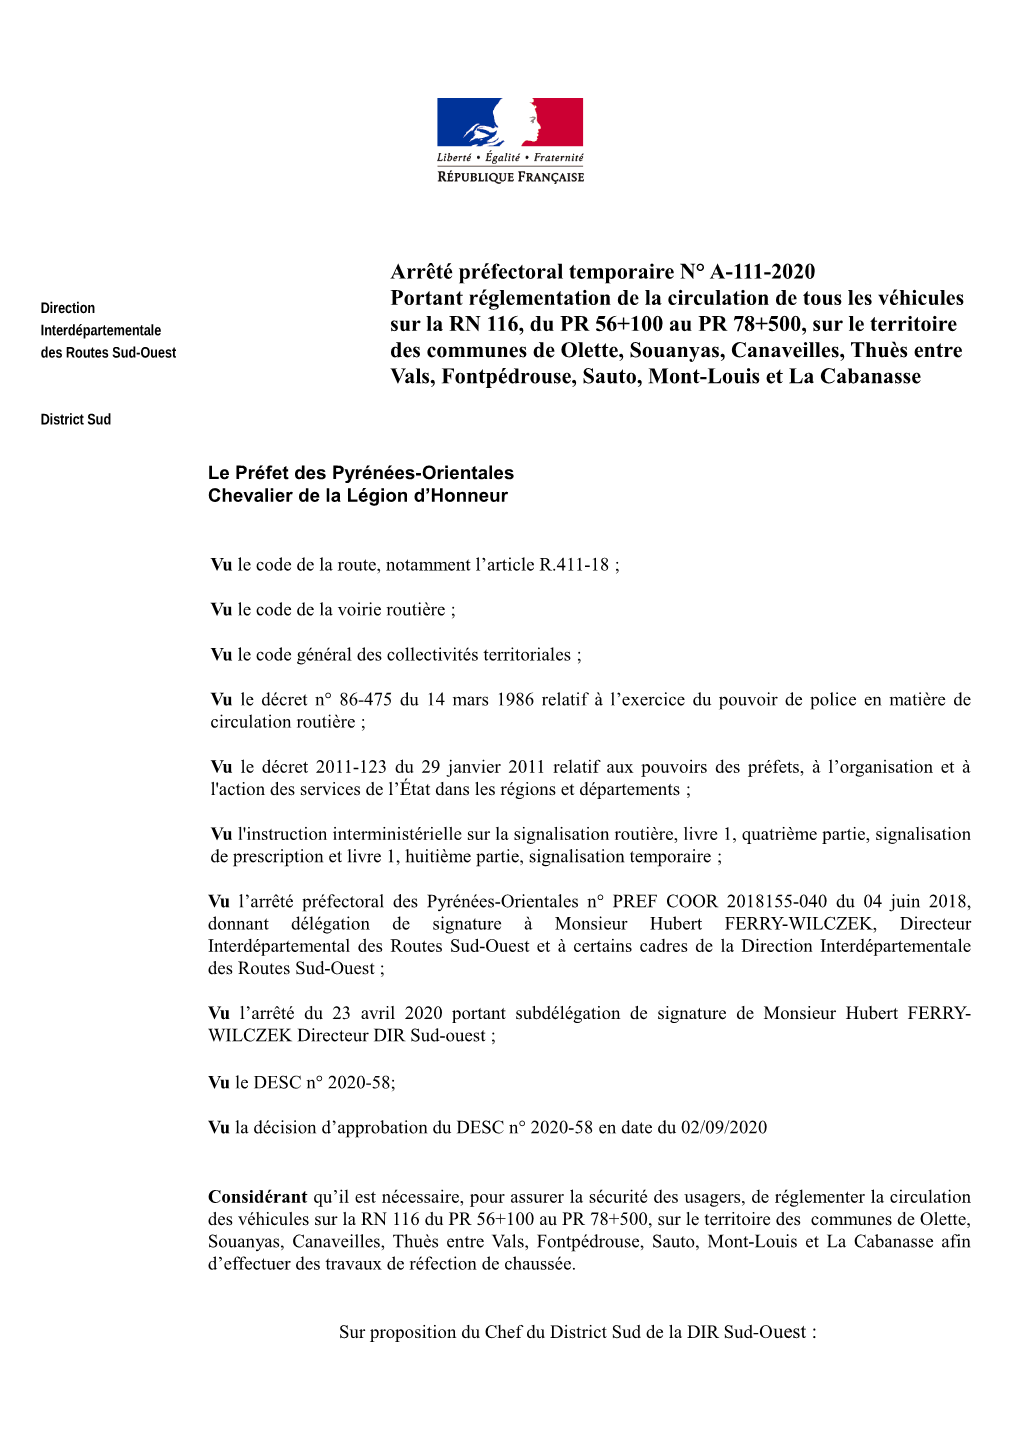 Arrêté Préfectoral Temporaire N° A-111-2020 Portant Réglementation